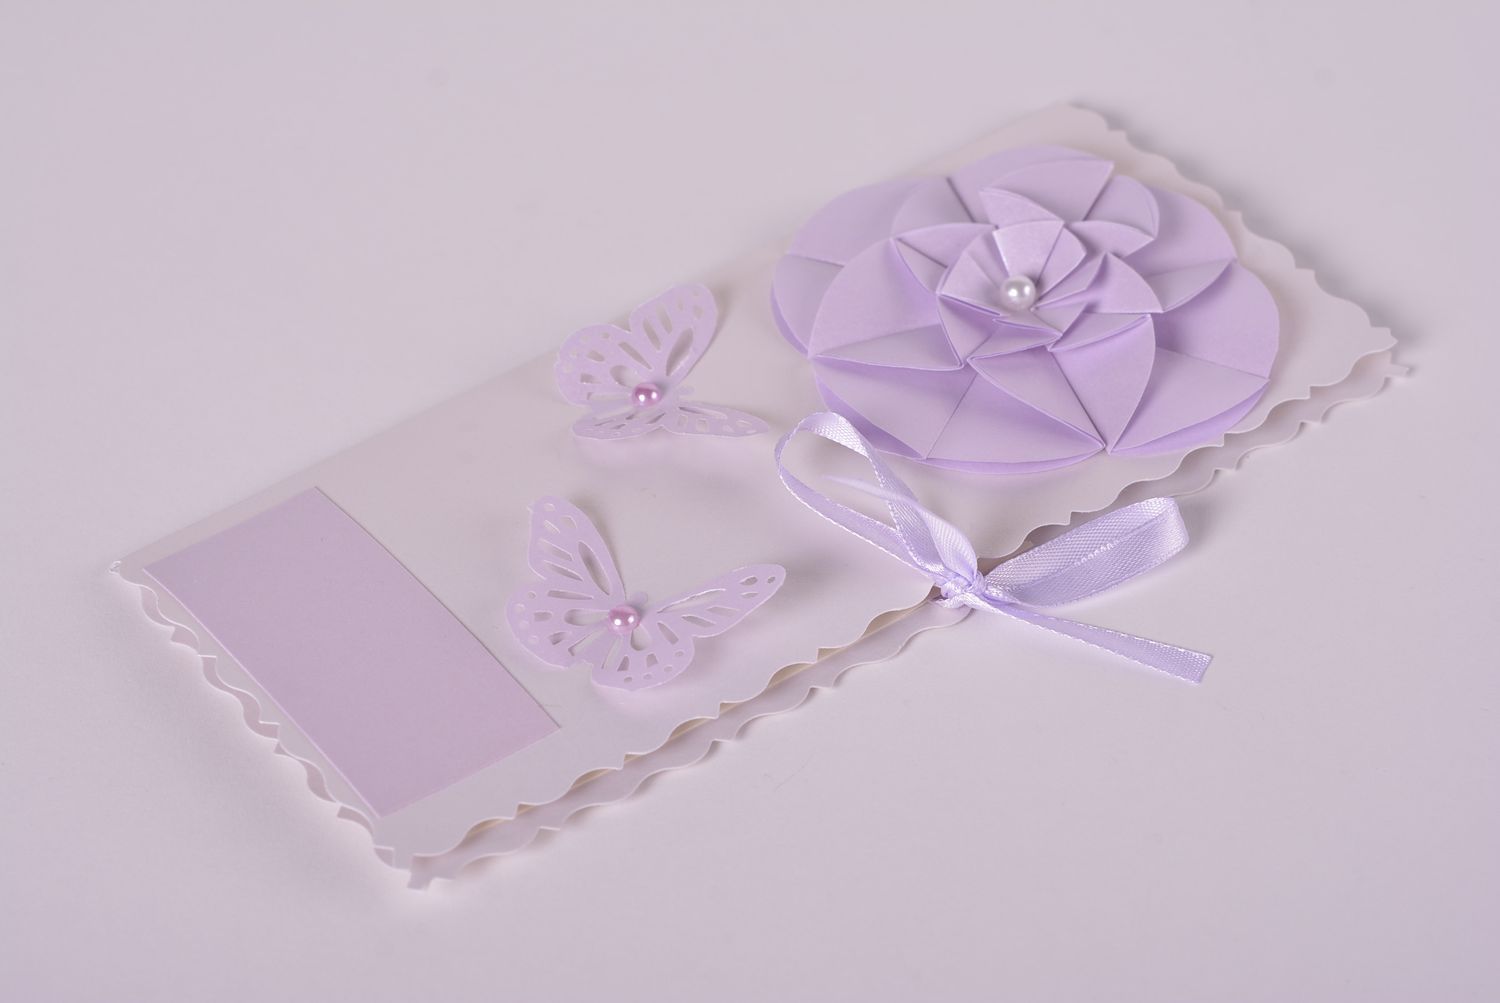 Handmade ausgefallenes Geschenk Scrapbooking Karte schöne Grußkarte violett foto 1